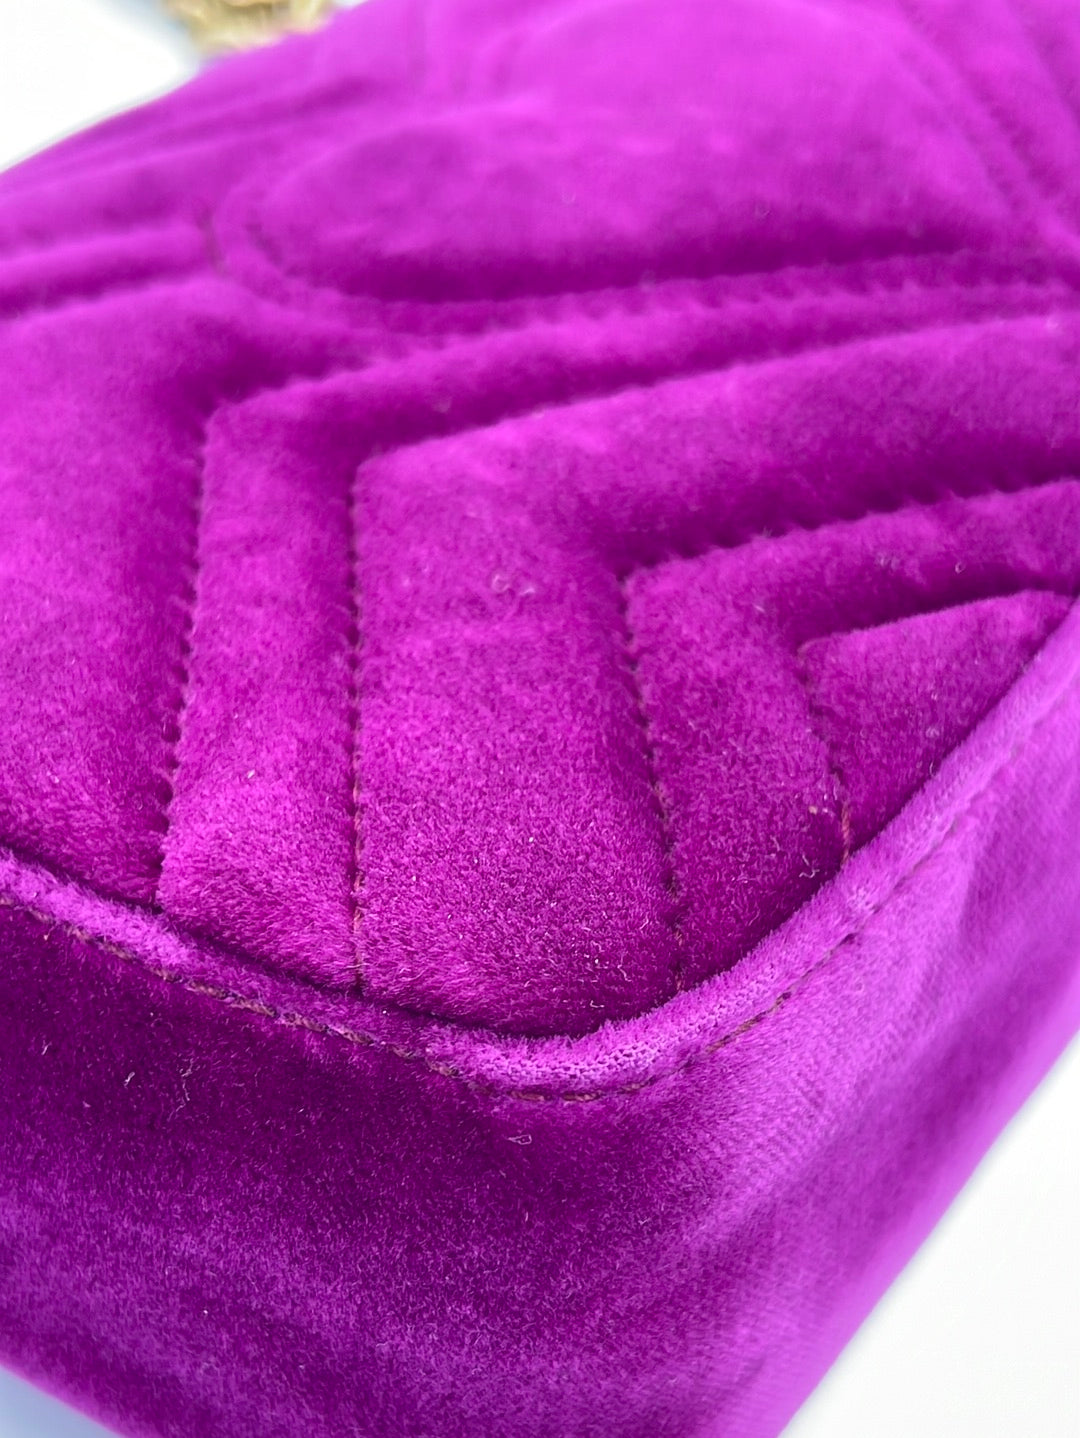 Preloved Gucci Purple Velvet Embellished GG Mini Marmont Bag 446744001998 061223 $500 OFF